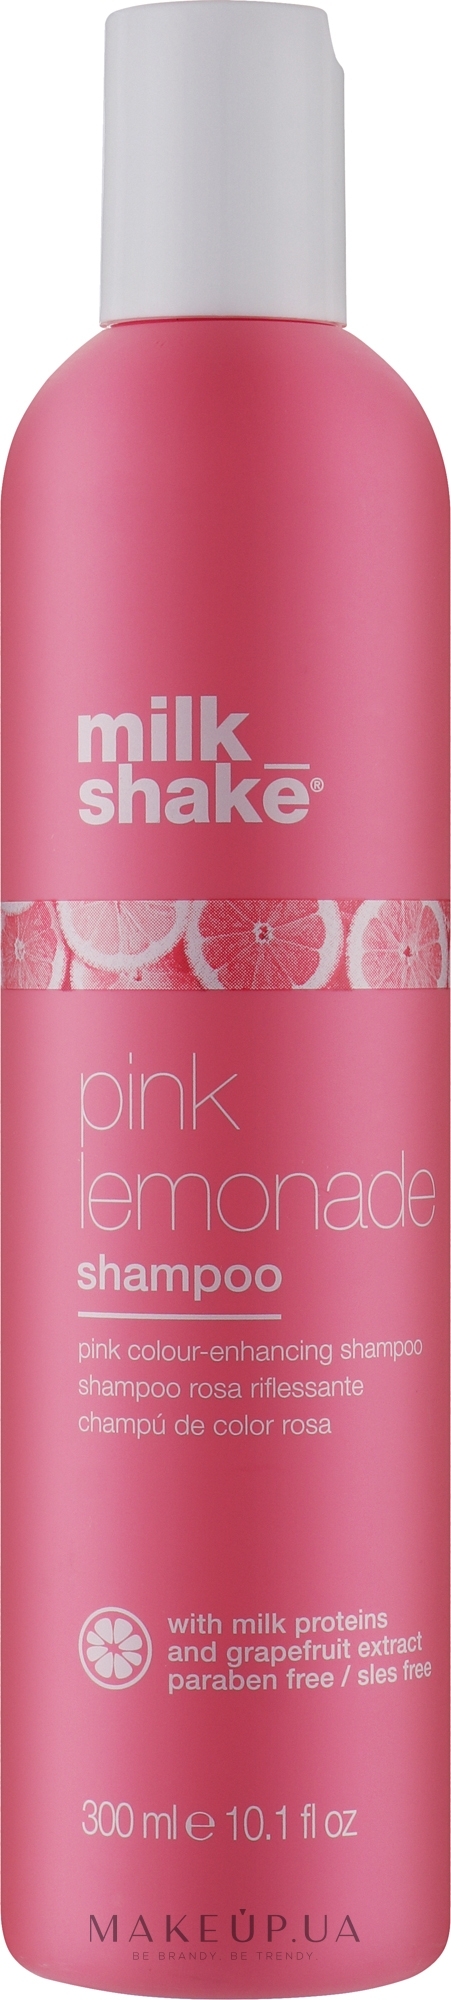 Шампунь для світлого волосся - Milk_shake Pink Lemonade Shampoo  — фото 300ml